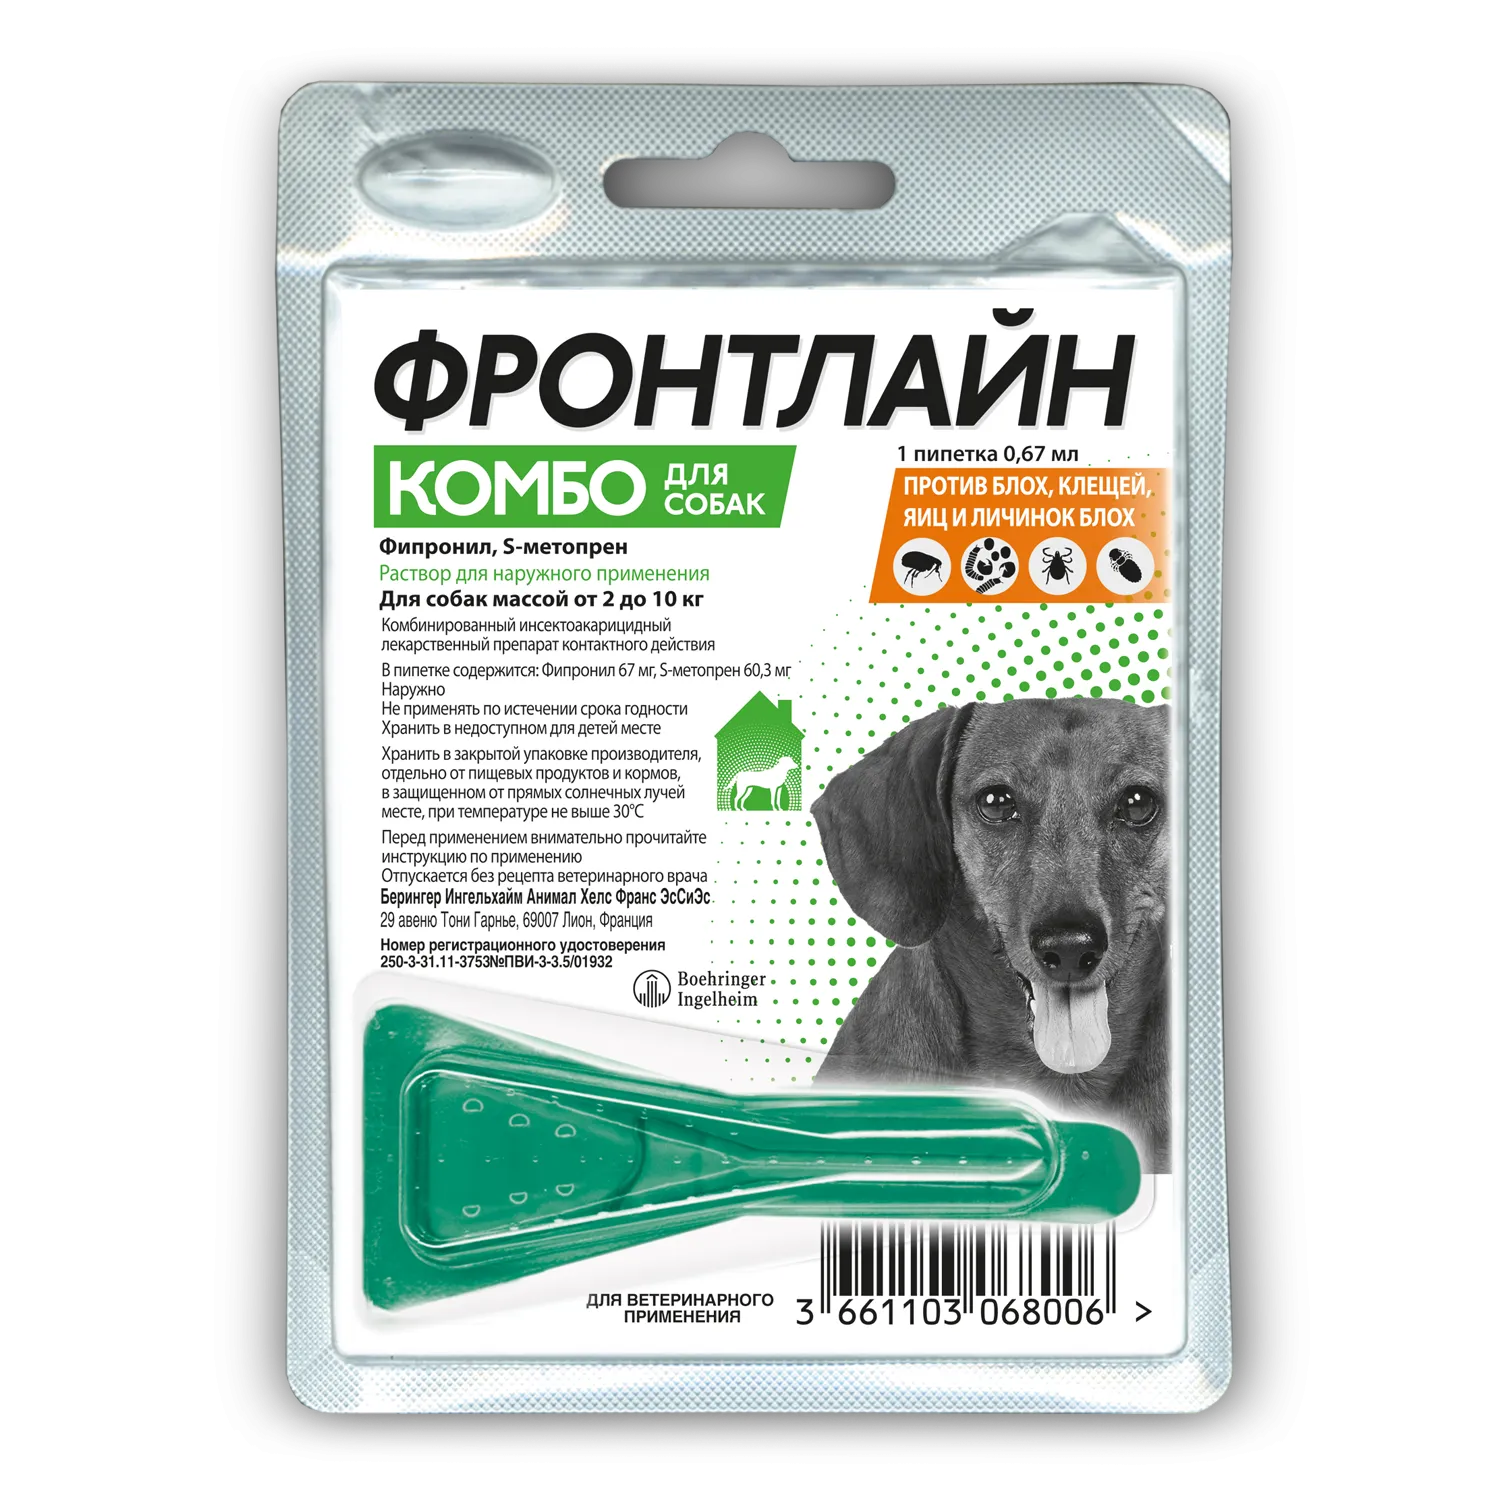 BI Фронтлайн Комбо капли для собак  для защиты от клещей и блох 2-10 кг, S пипетка 0,67 мл